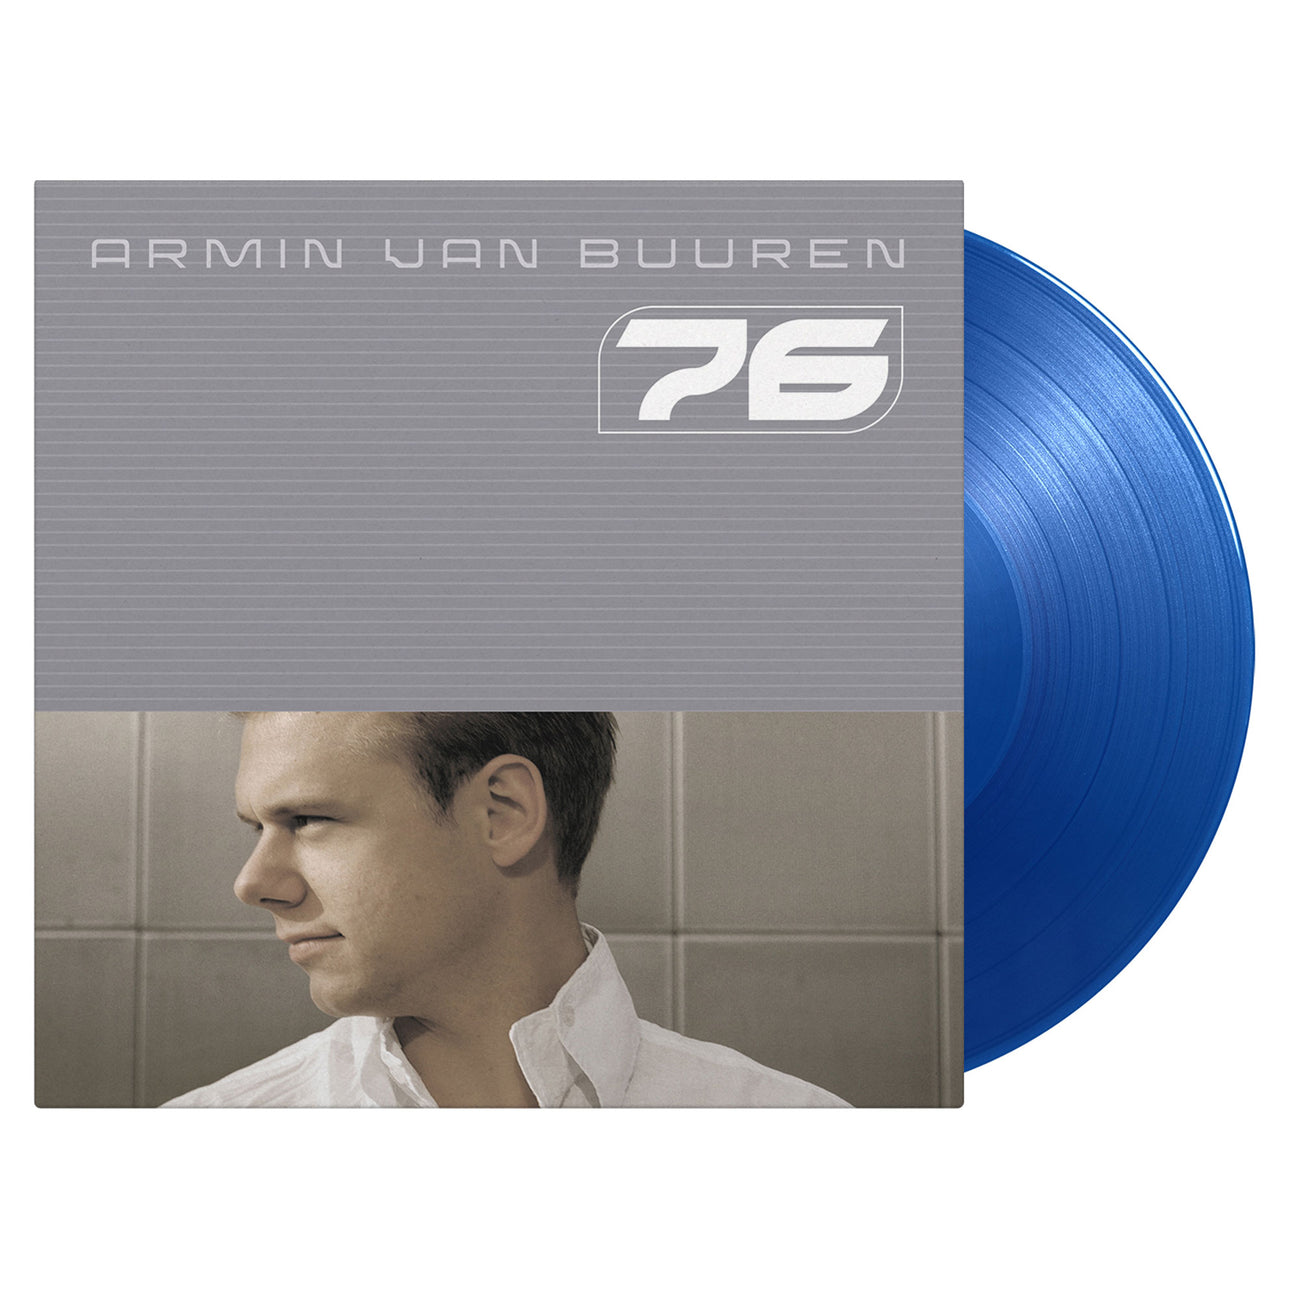 Armin van Buuren - 76 (Vinyl)